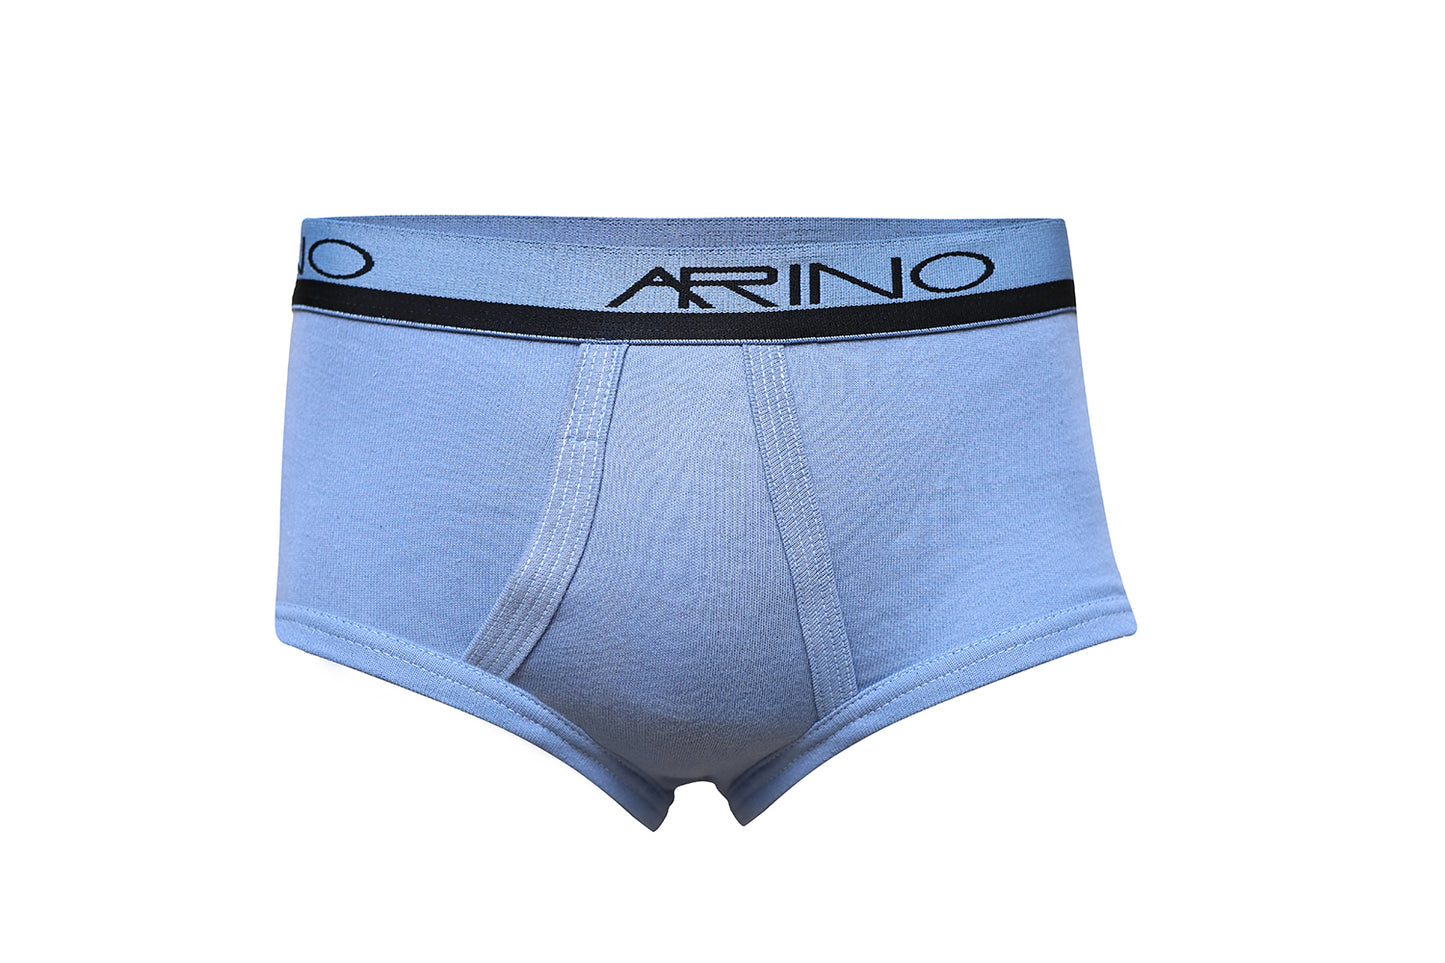 ARINO® Multi Color White Interlock Men's Briefs With Open Elastic (7 Colors)